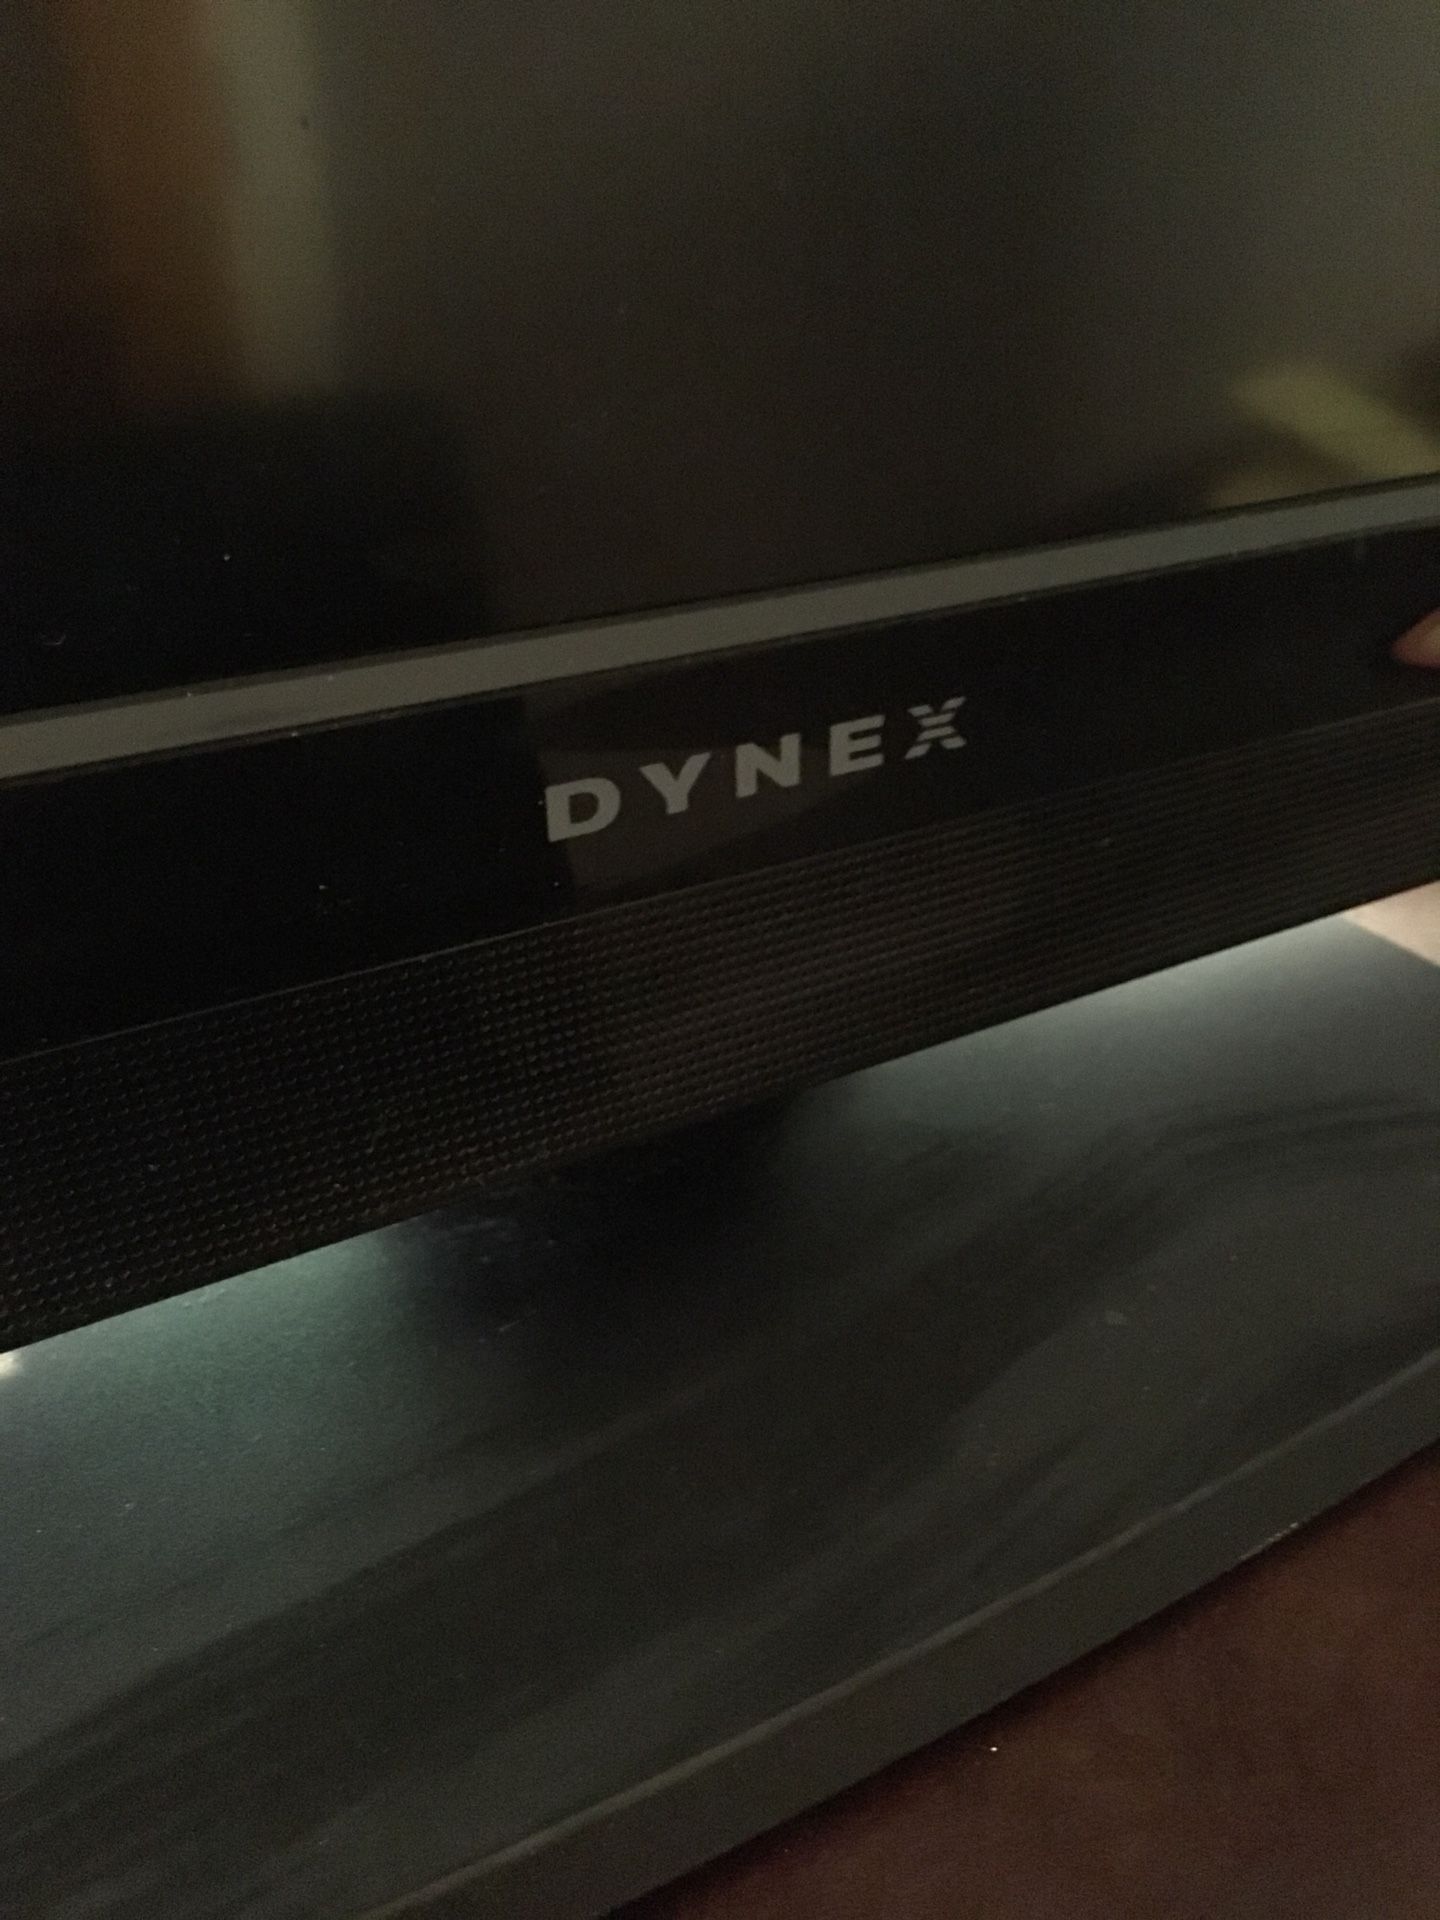 32” DYNEX TV